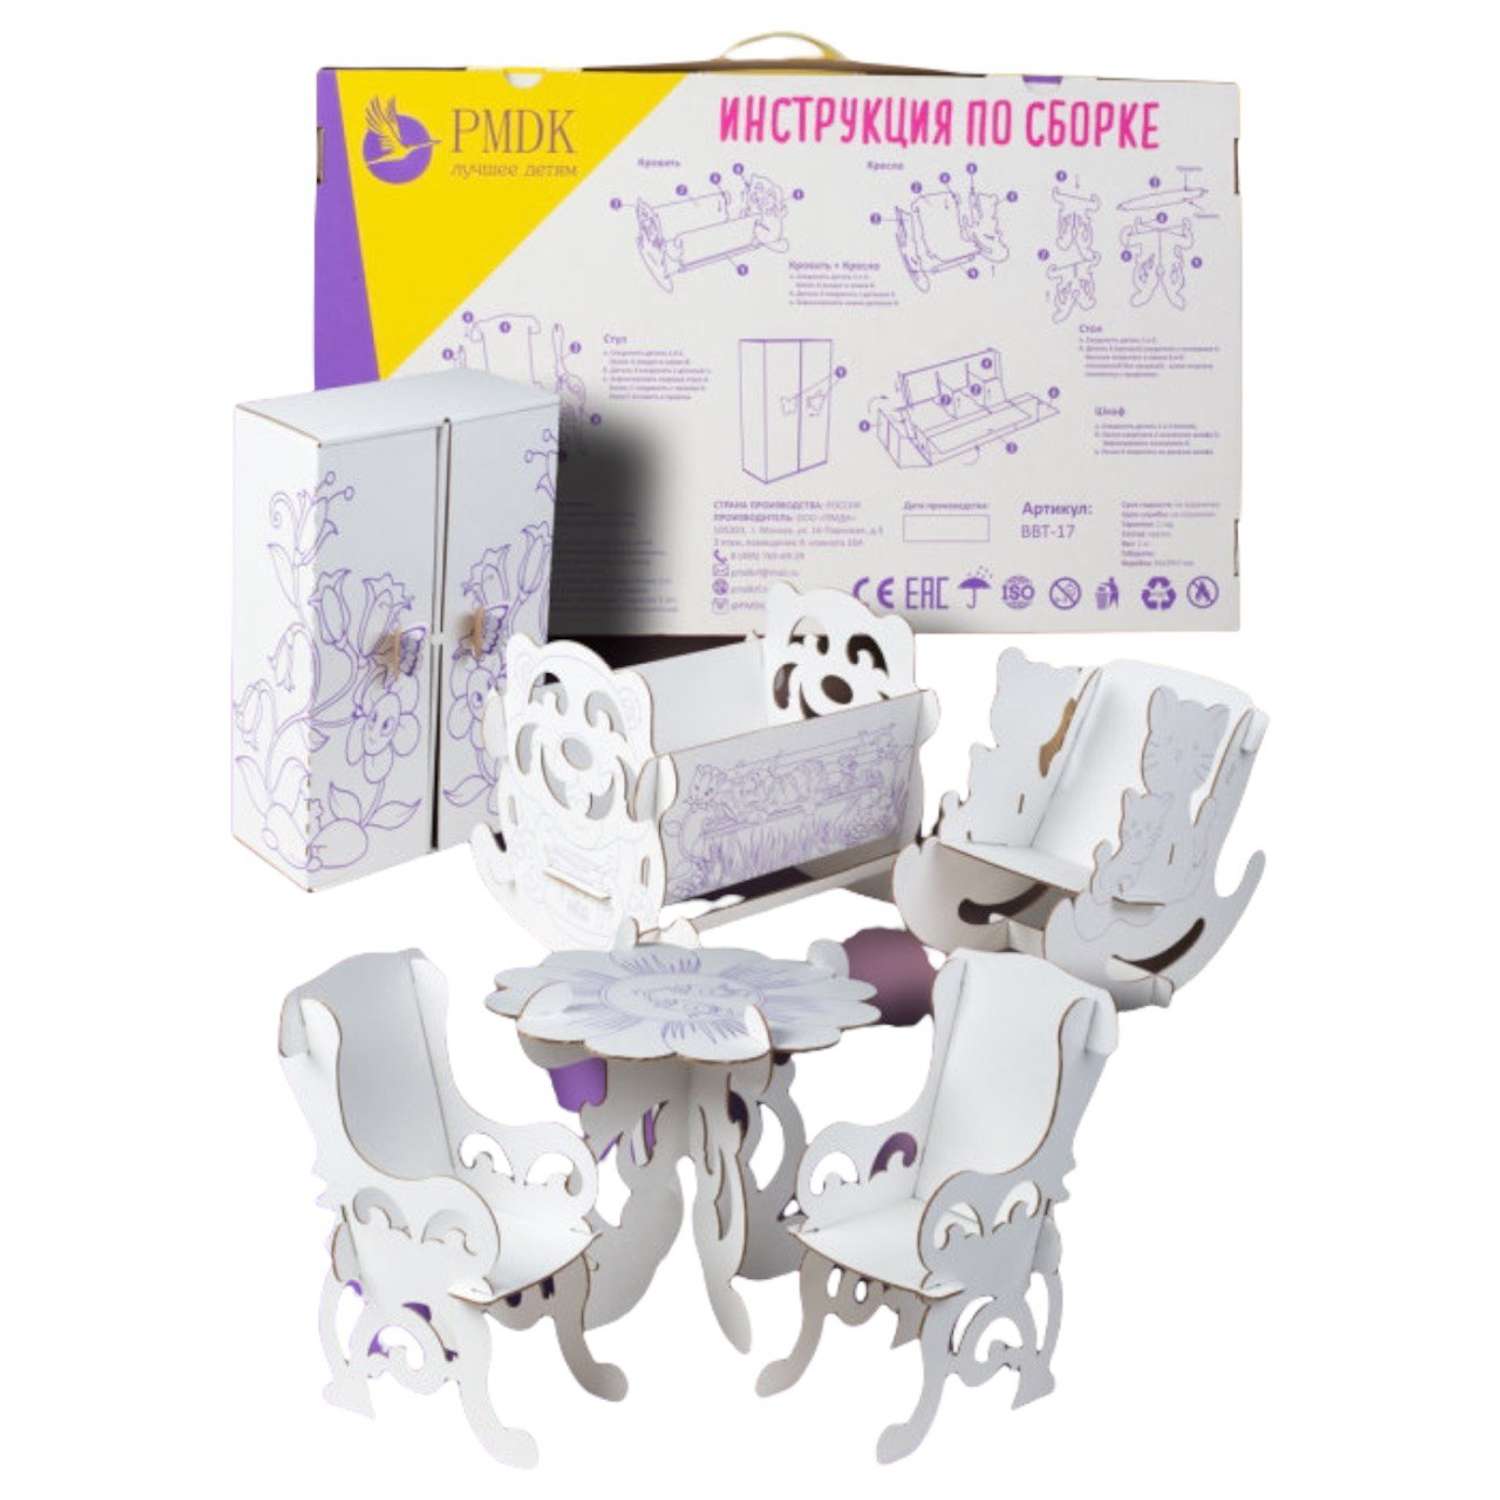 Мебель для кукол ПМДК из картона ВВТ-17 14114115 - фото 2